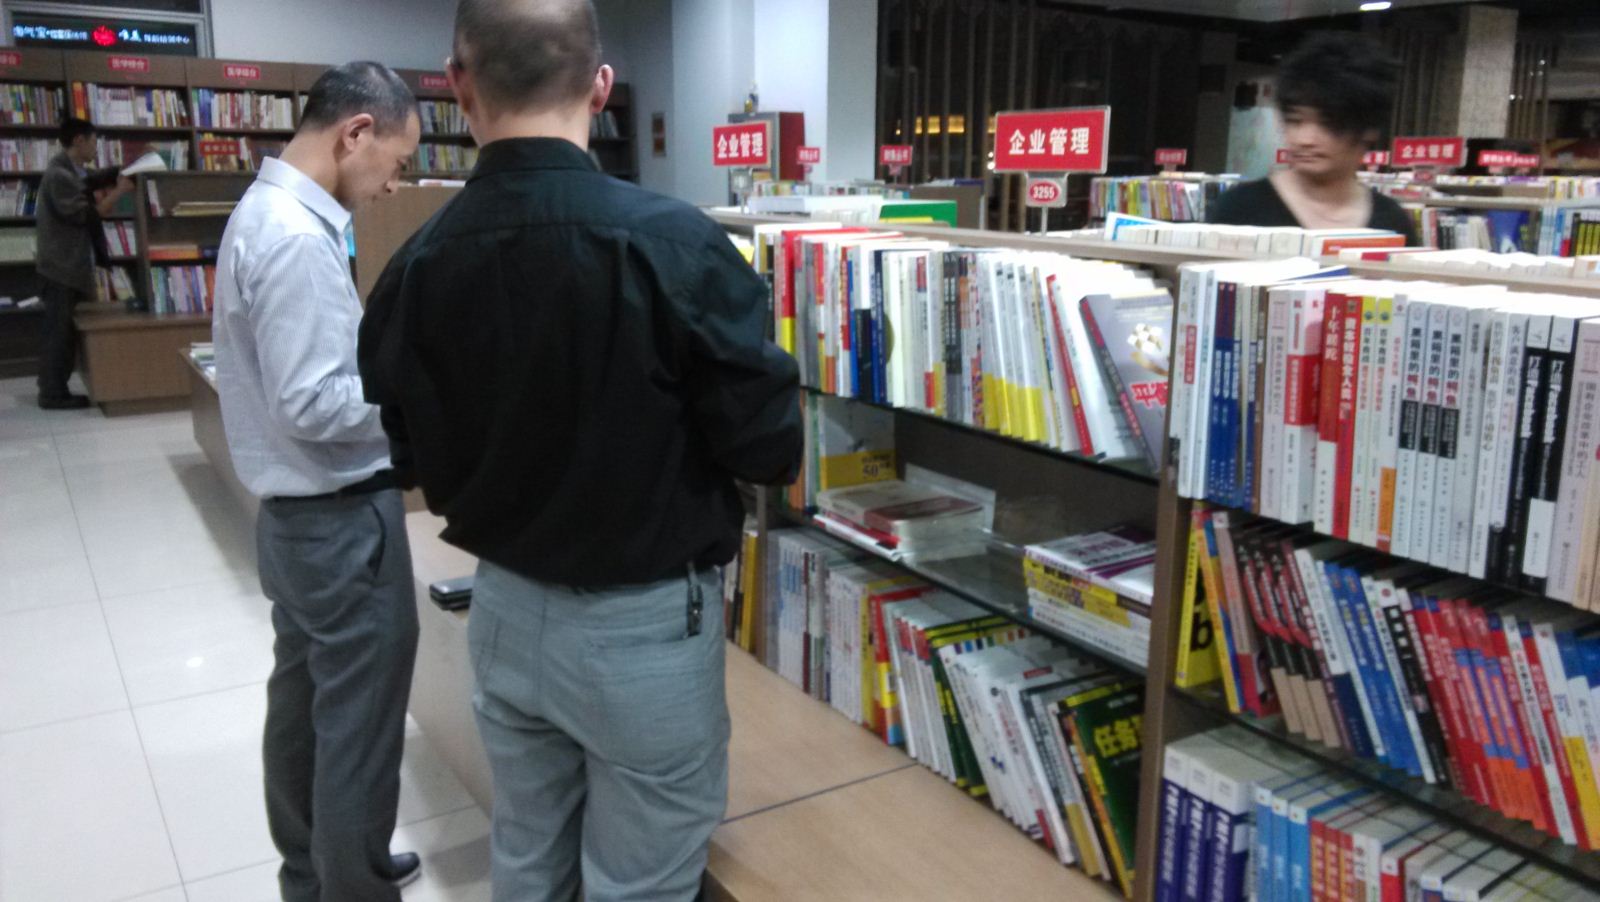 定制帽子厂的员工正在书店挑选书